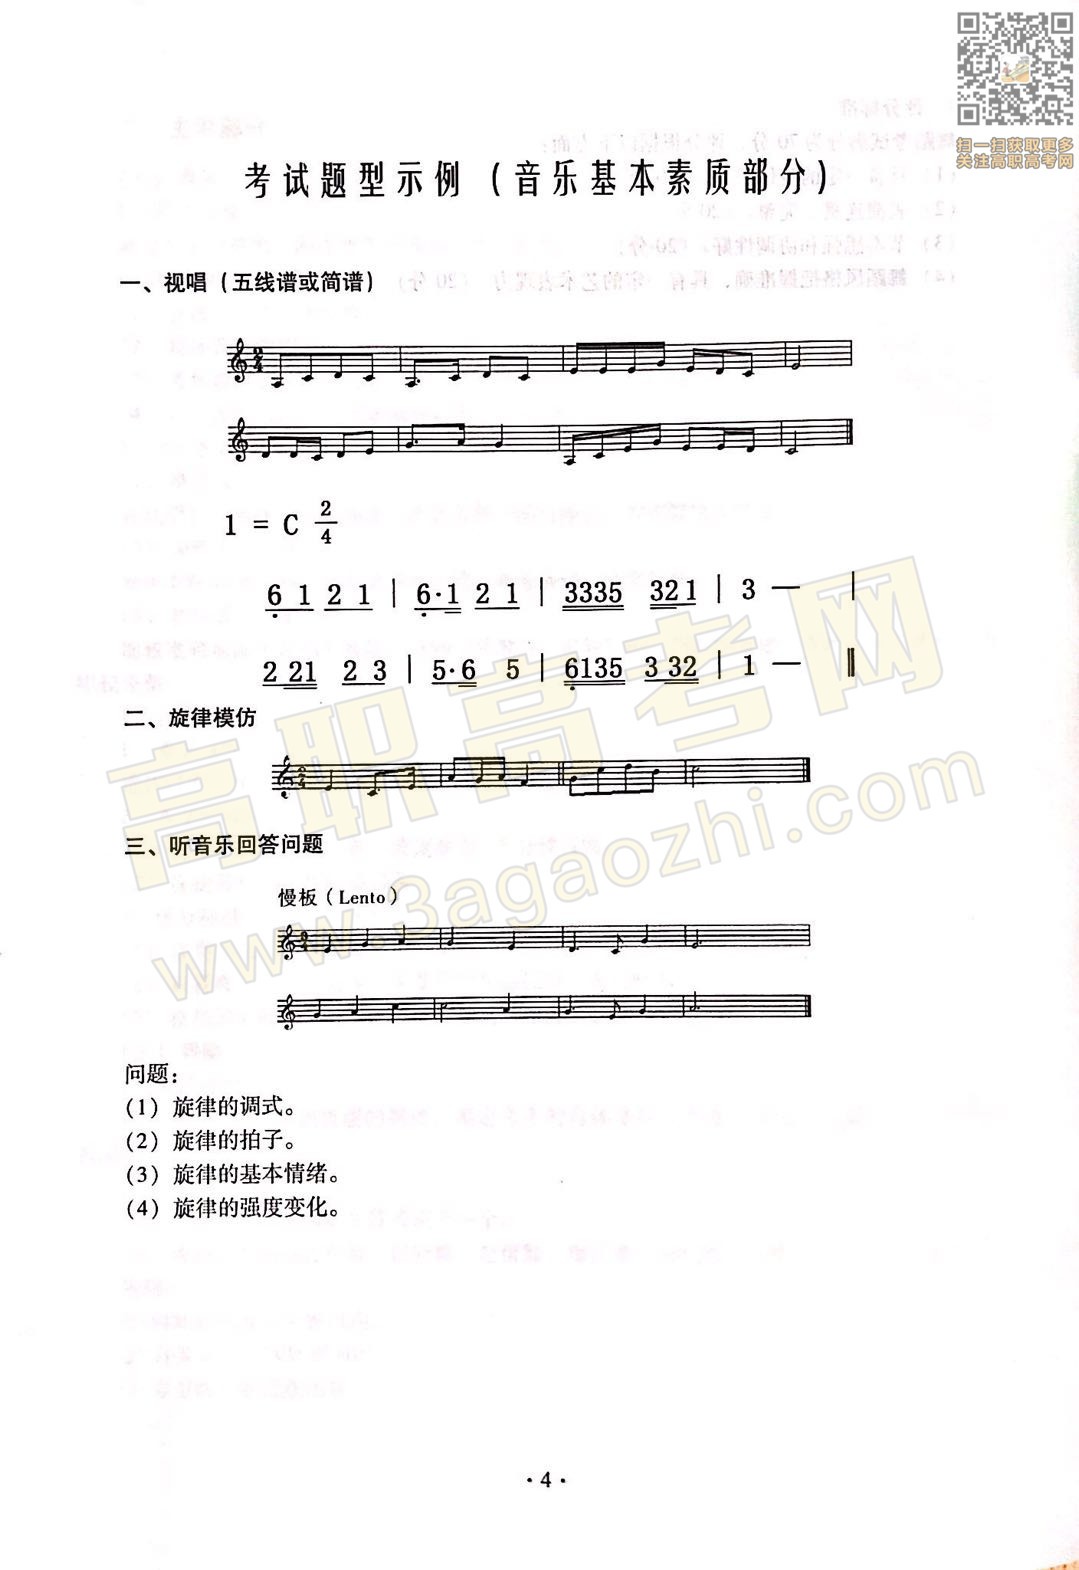 音乐综合课程证书,2020年广东中职技能课程考试大纲及样题